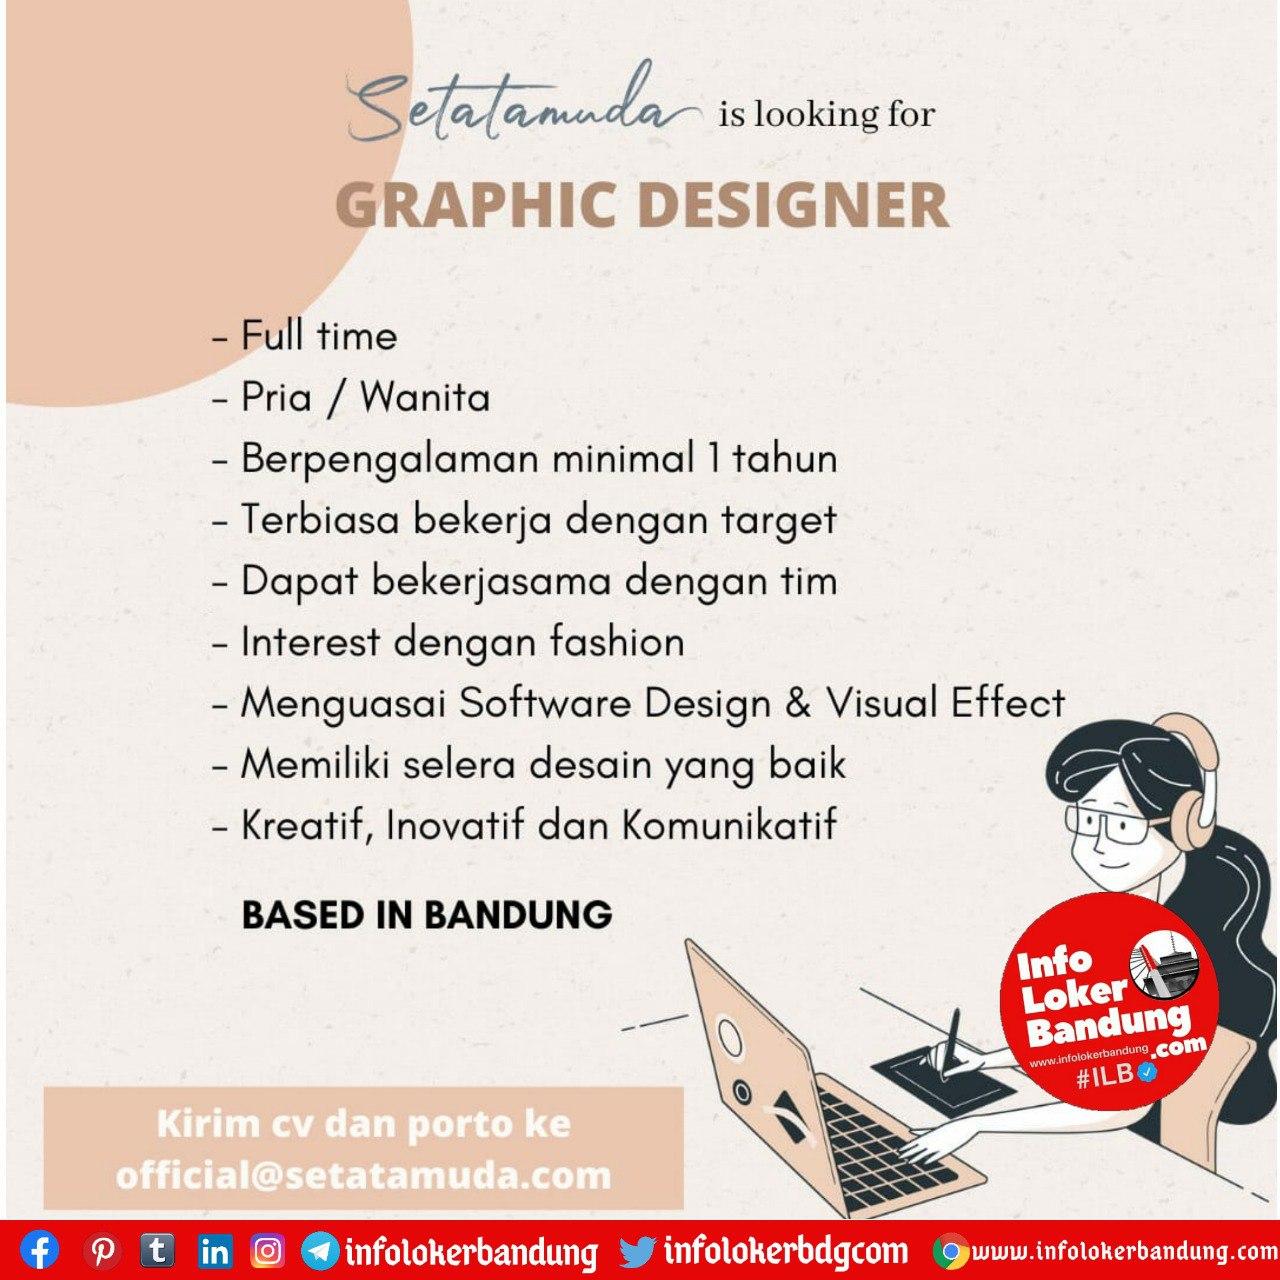  Lowongan  Kerja  Graphic Designer  Setatamuda Bandung  Agustus 